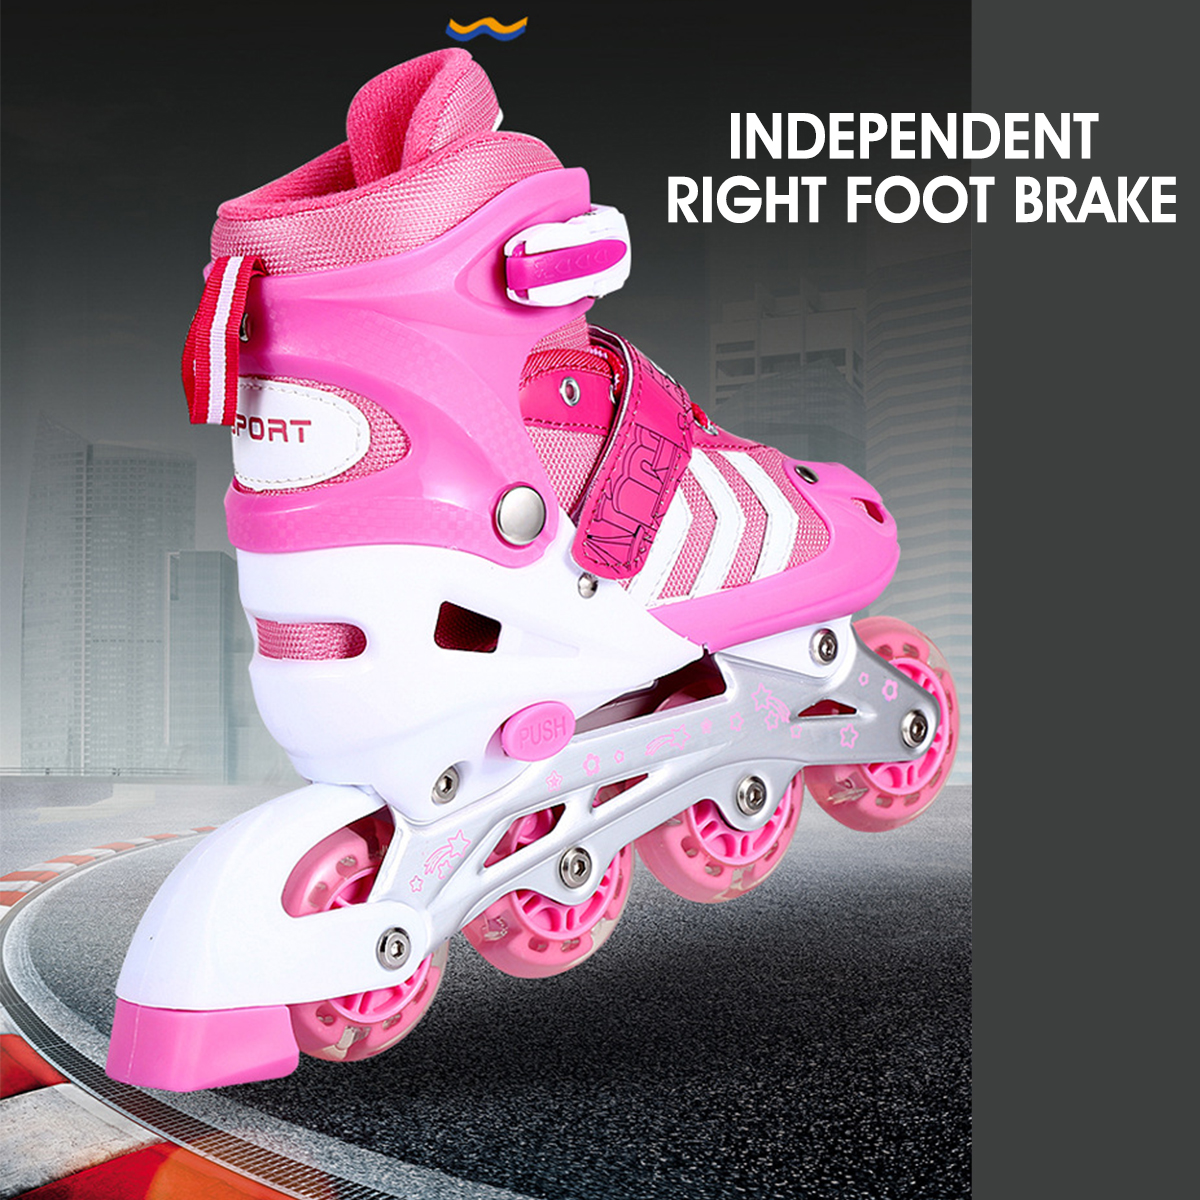 SML-Inline-Skates-with-4-LED-PVC-Skate-Wheels--Entry-level-Kid-Women-Men-Roller-Skates-Birthday-Gift-1808954-5